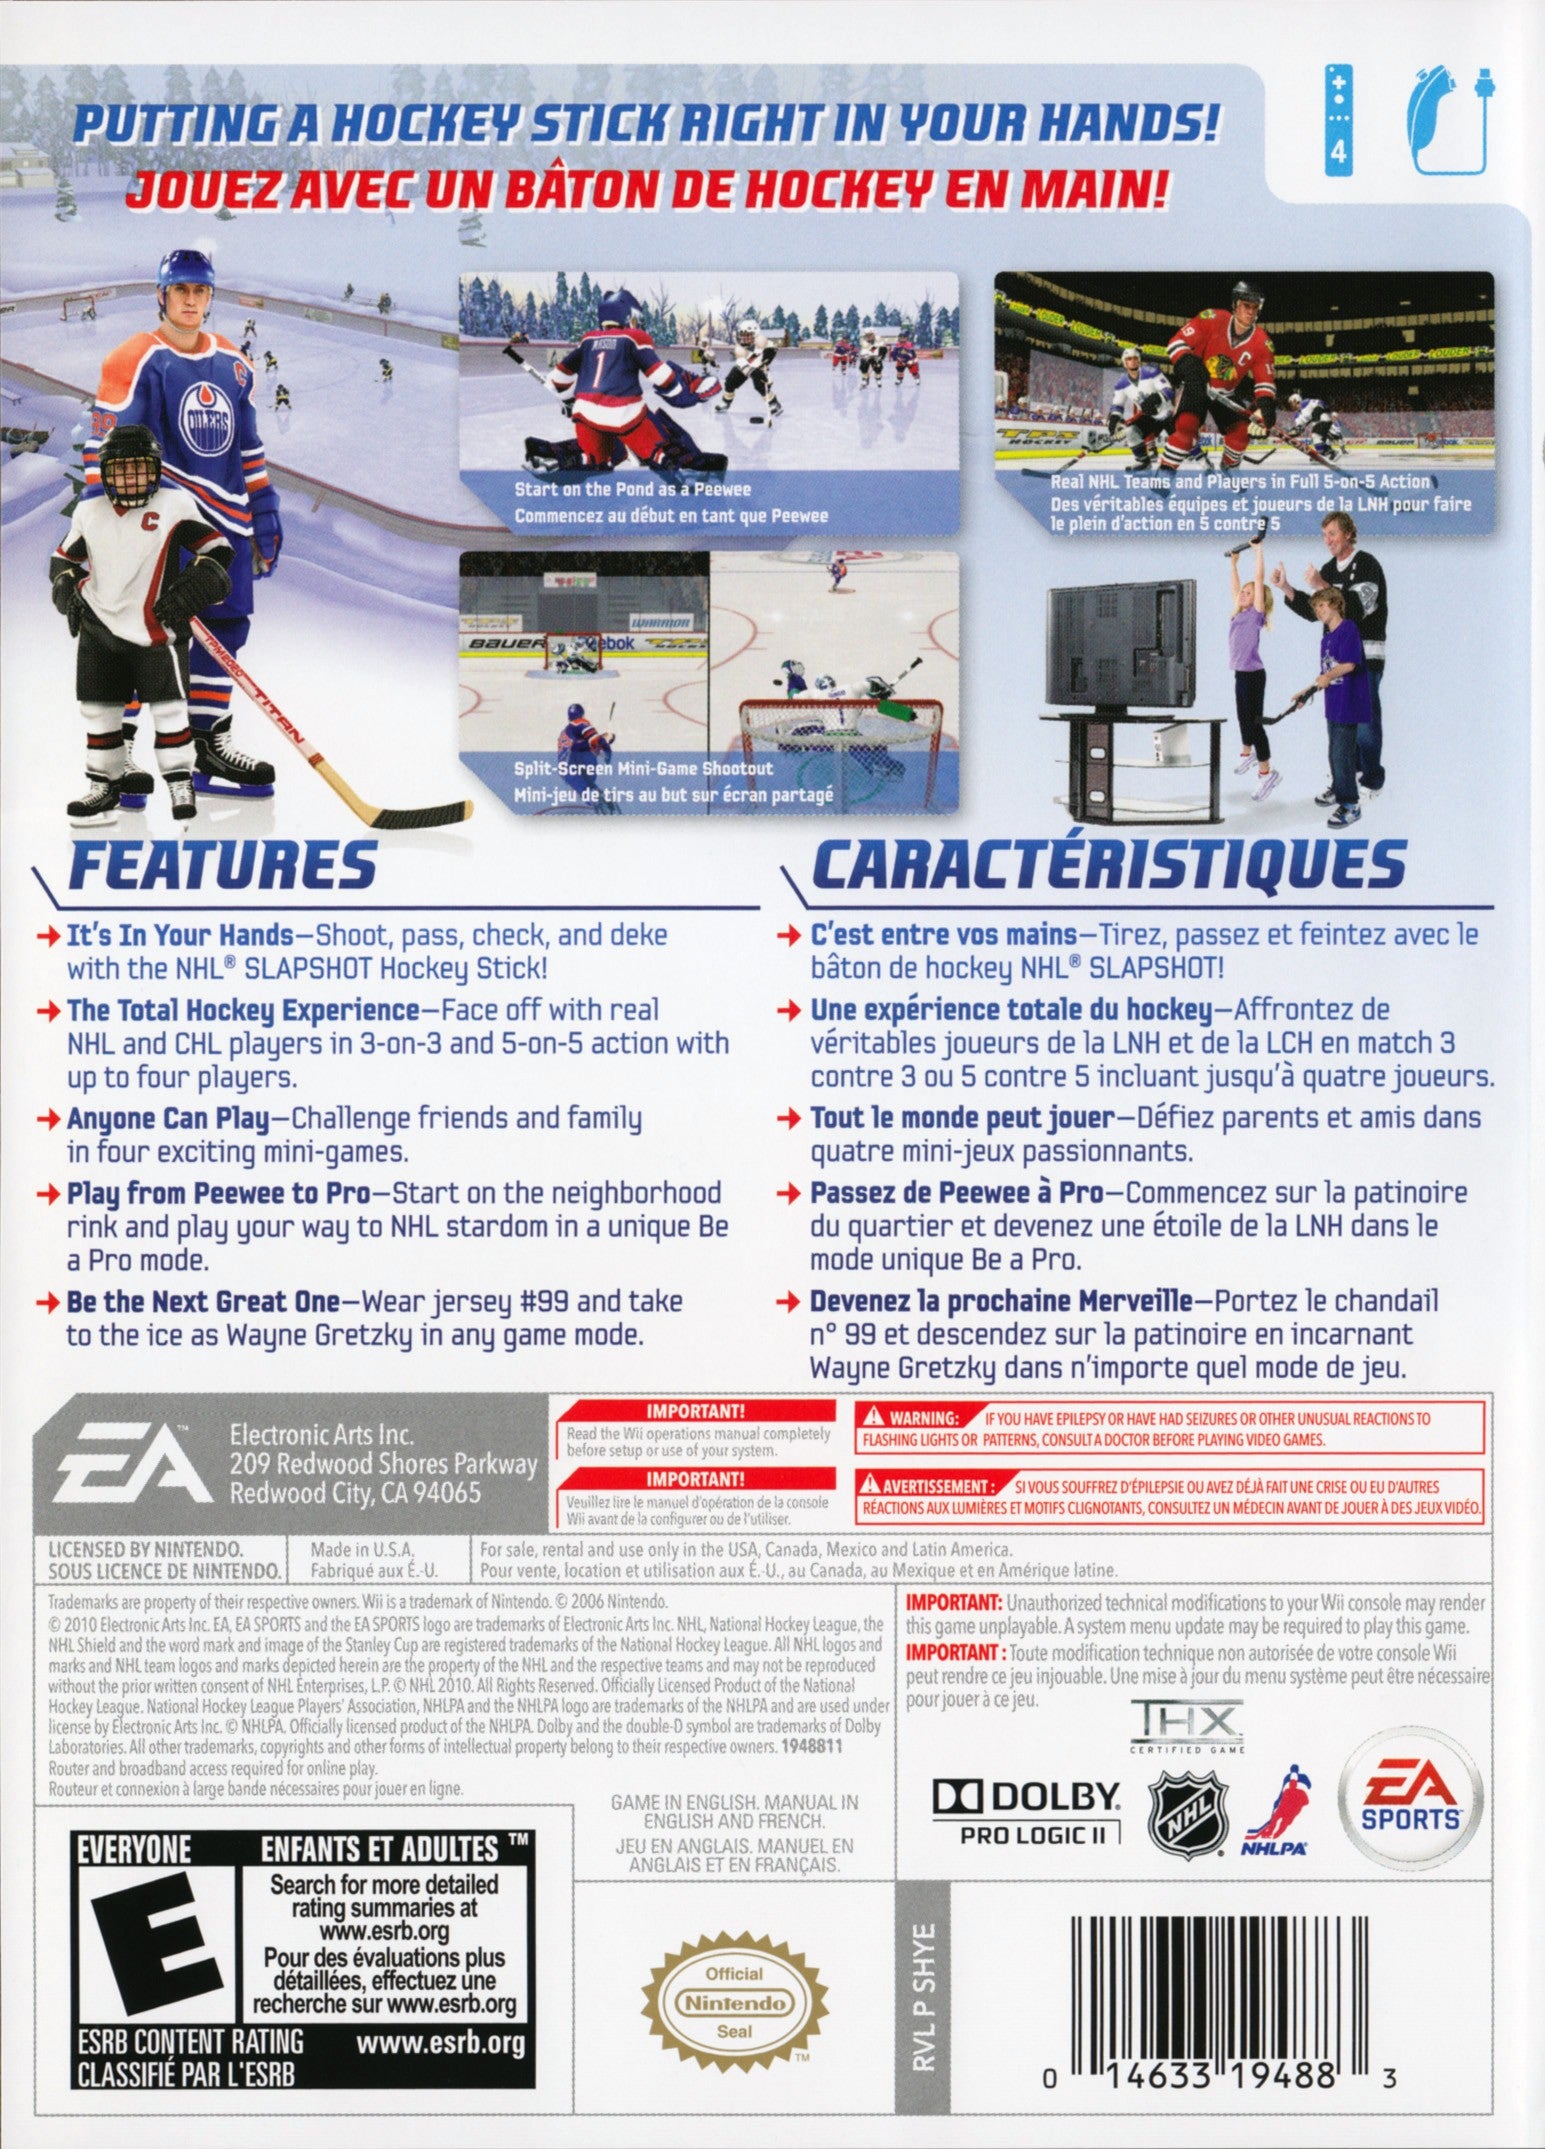 NHL Slapshot - Nintendo Wii Game